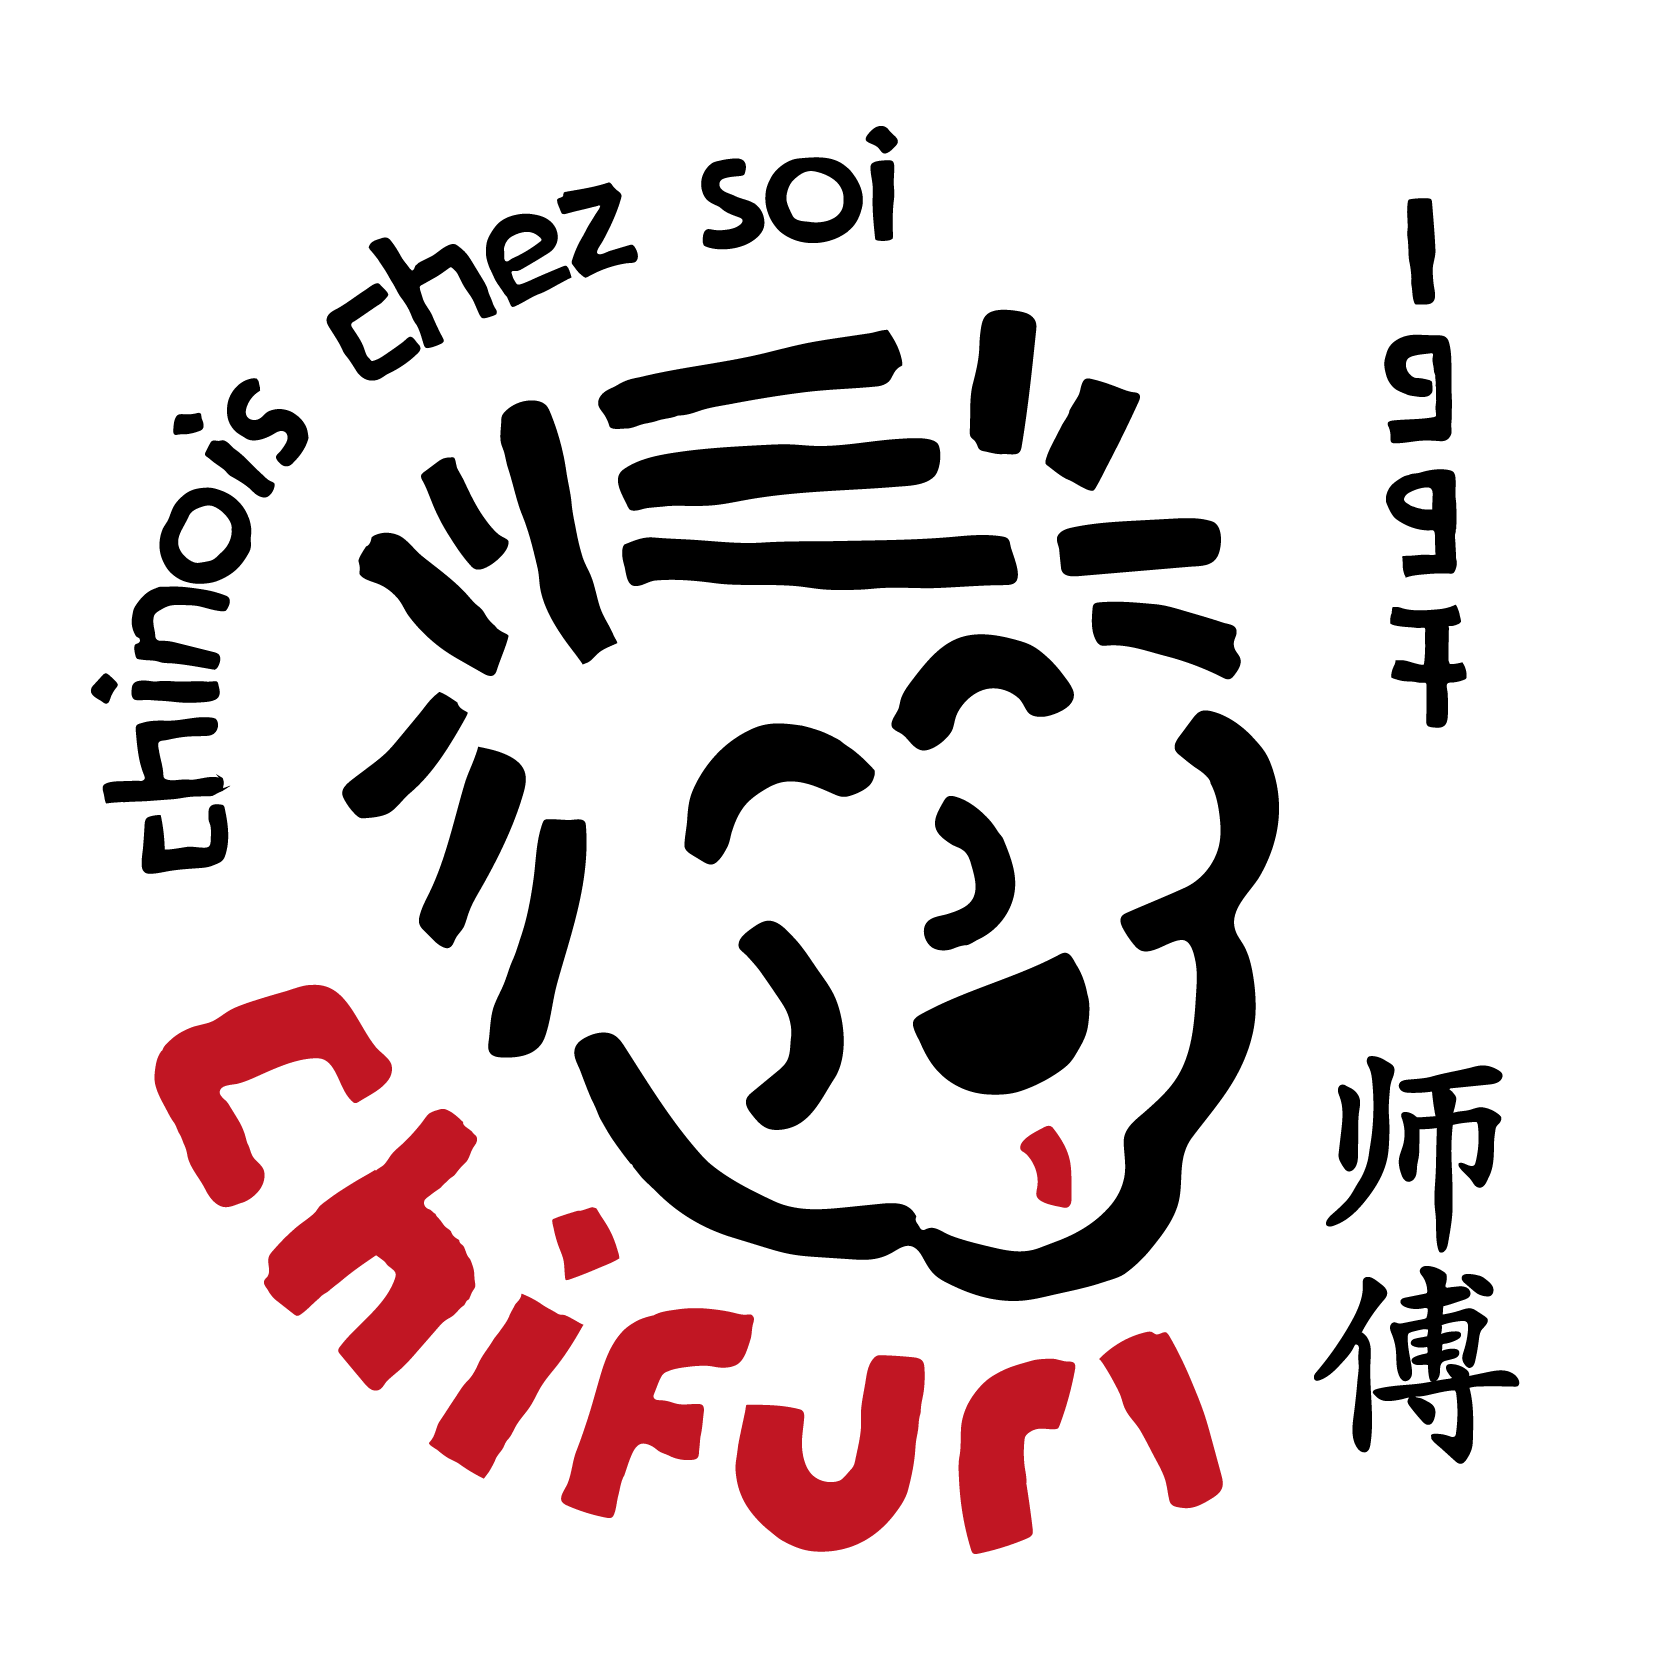 Yu.eat, yueat, Yu.eat, yu eat: Chifuri logo